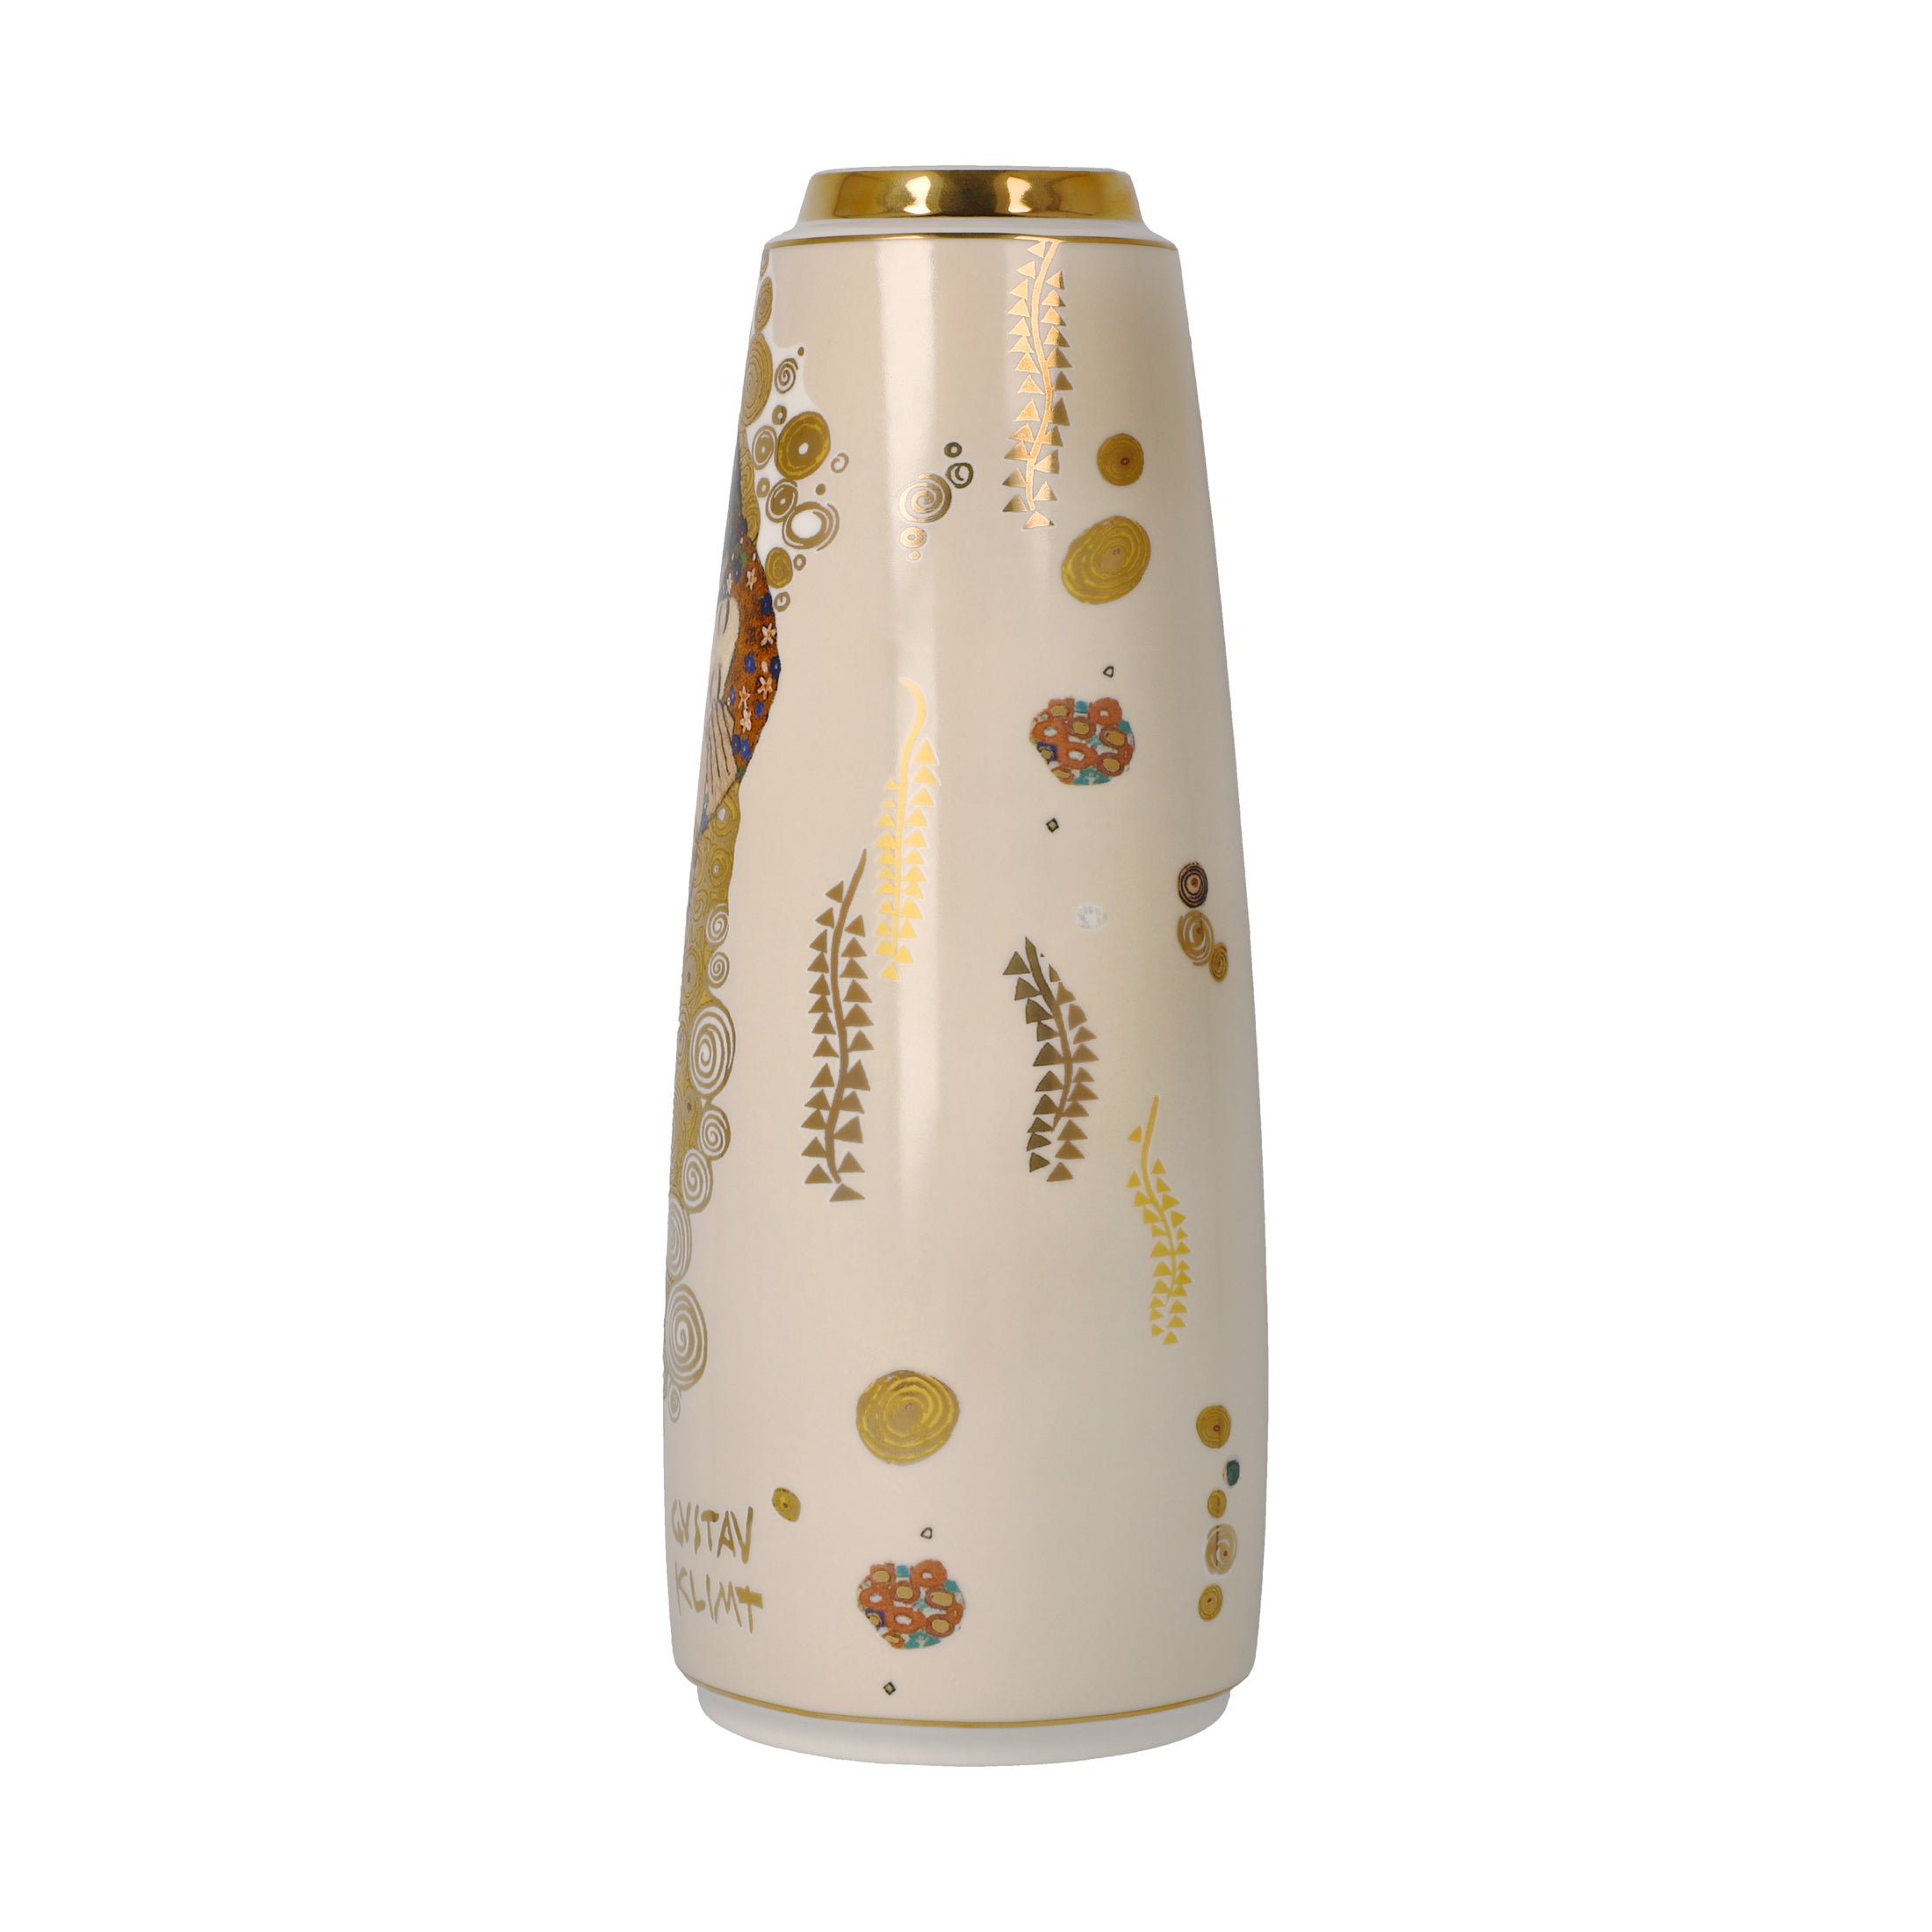 Goebel Artis Orbis Porzellan Vase 26,5cm "Der Kuss" von Gustav Klimt